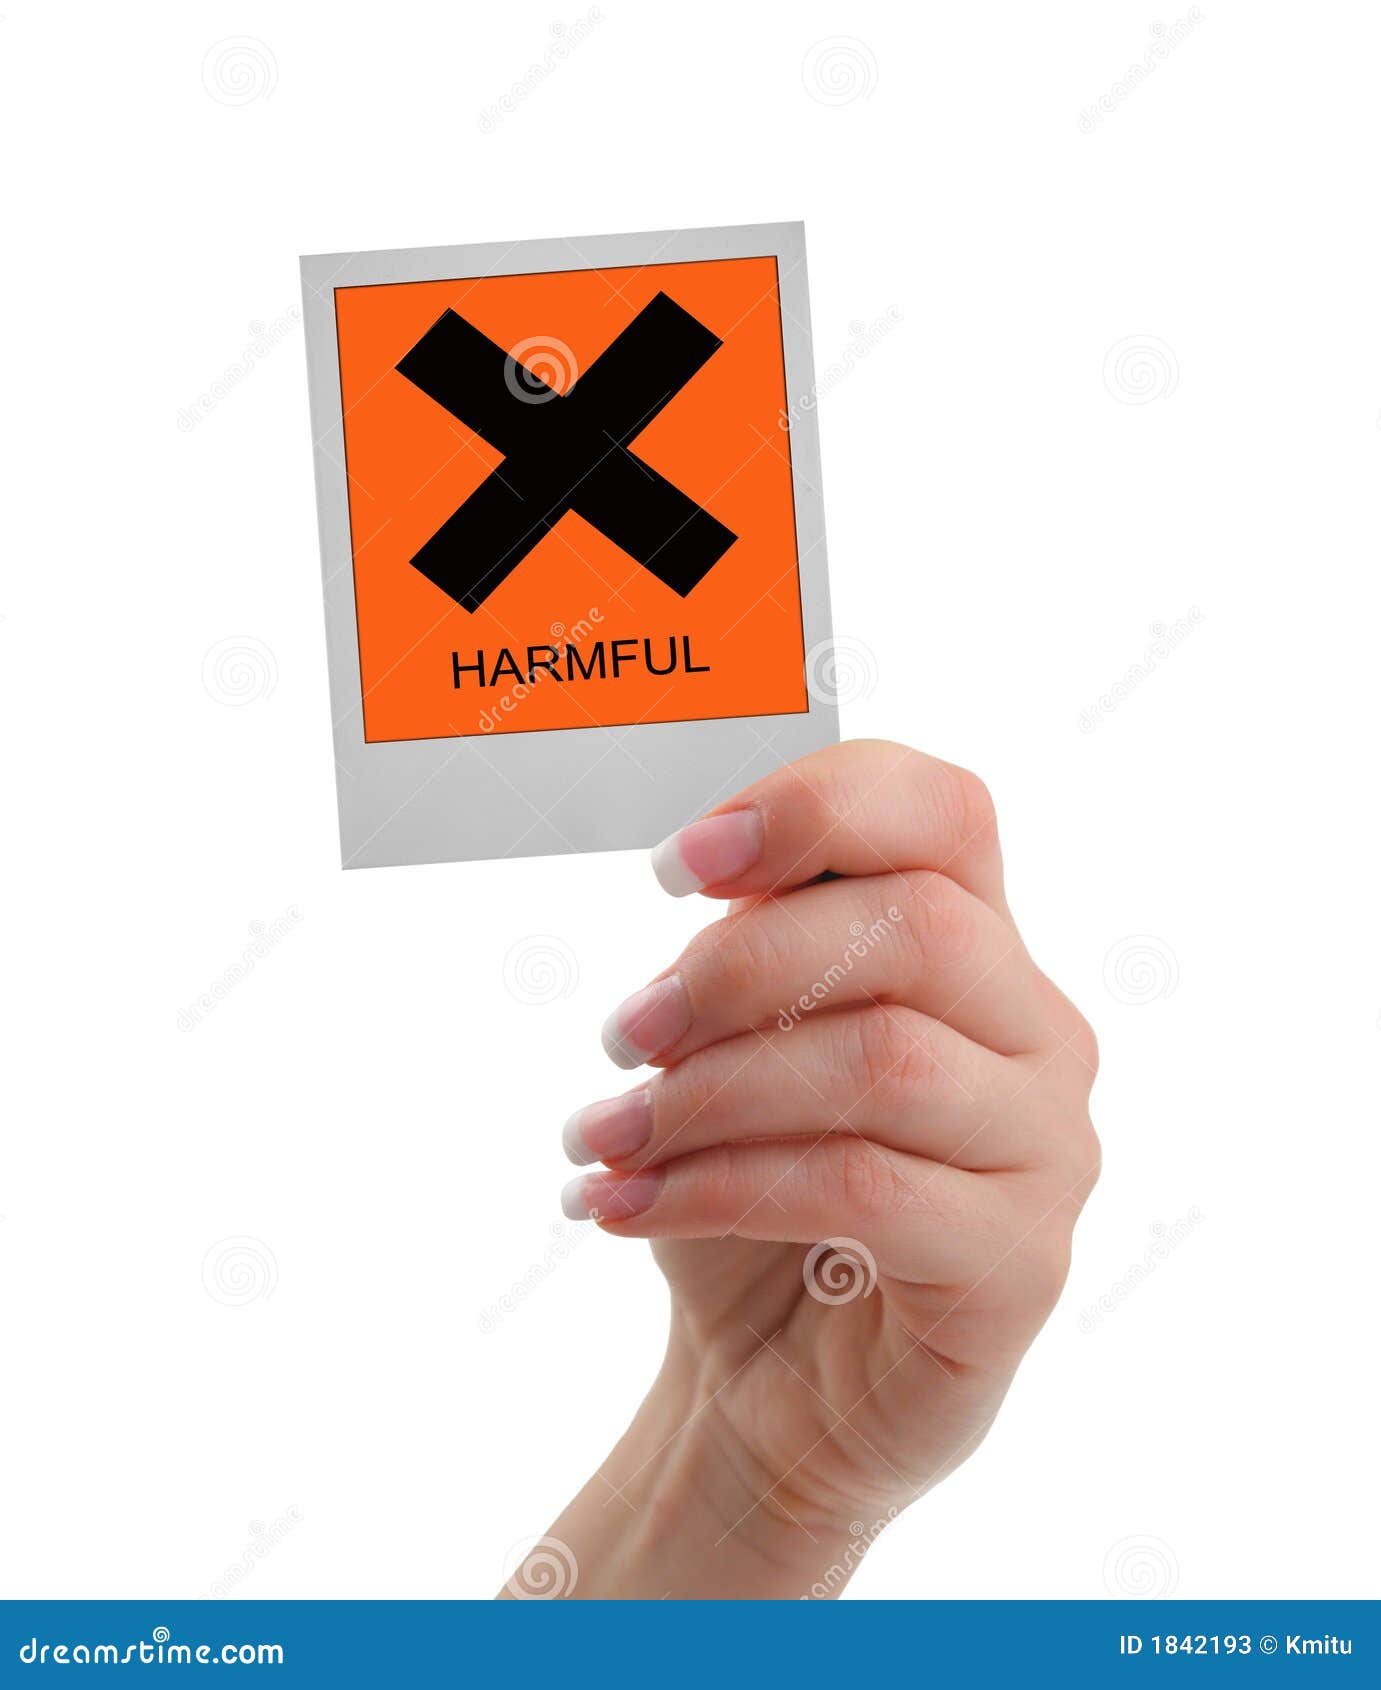 harmful warning